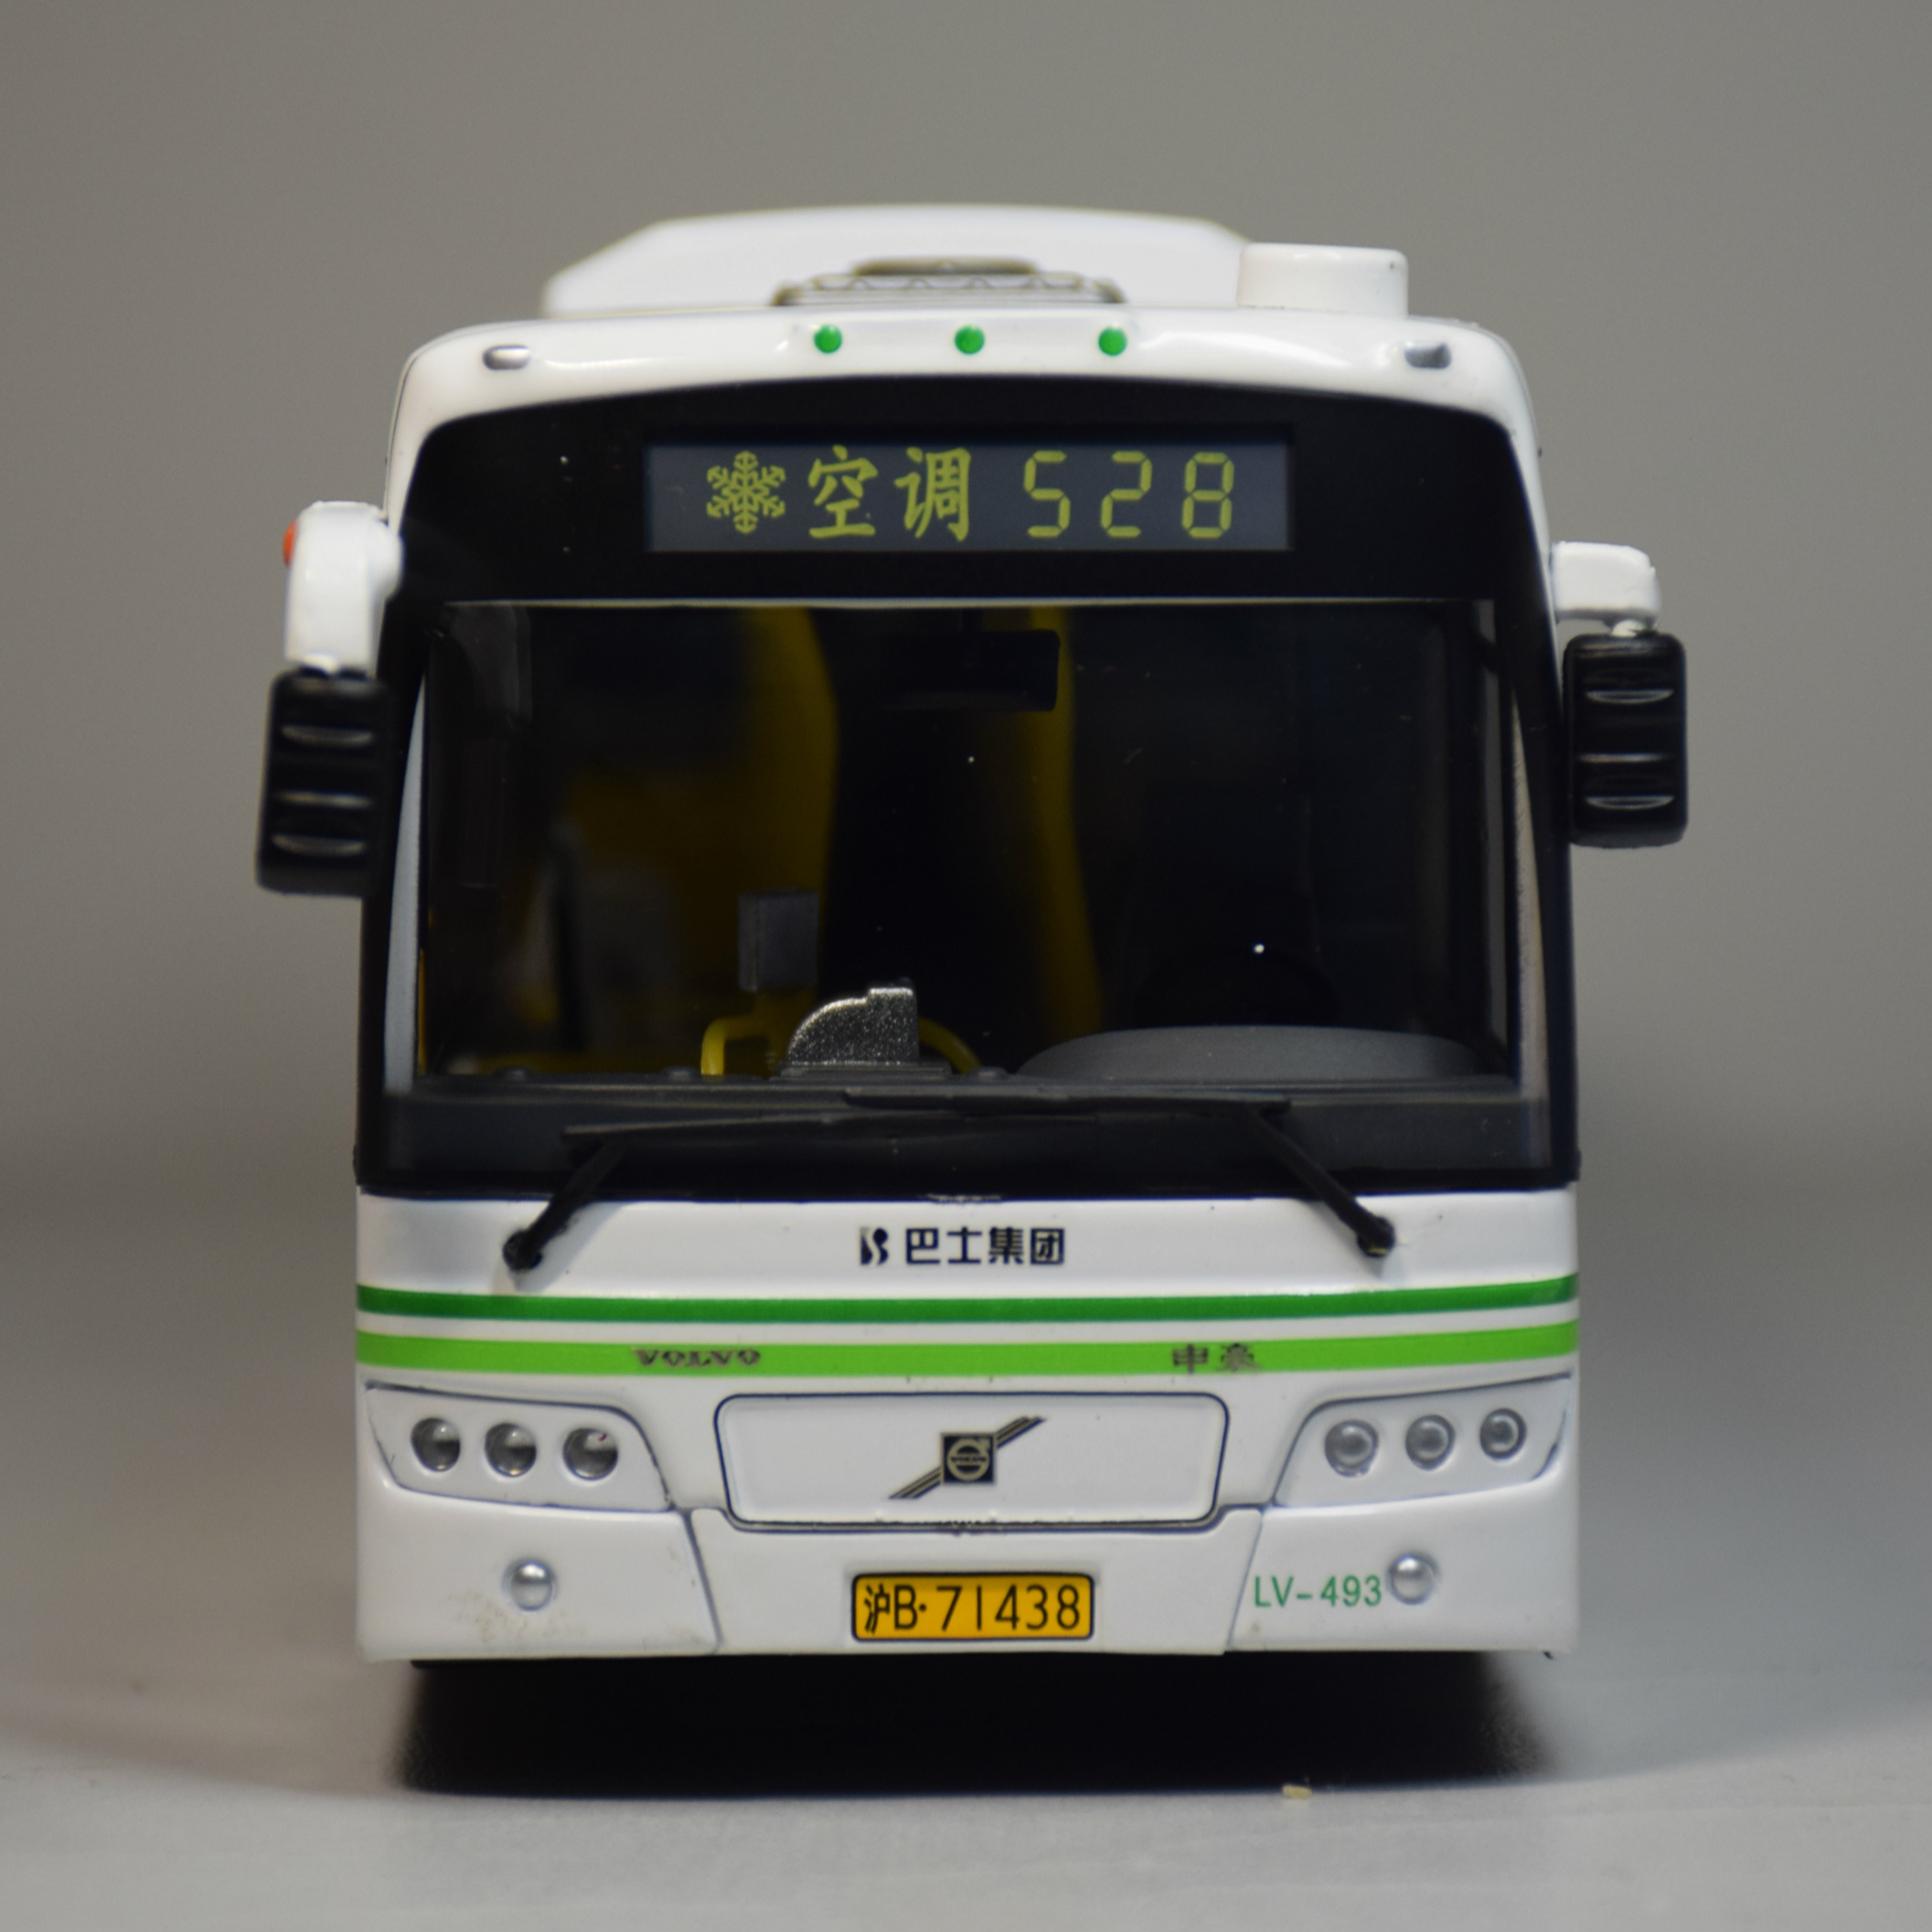 上海公交巴士汽车客车 仿真模型/玩具 528路 1:43 限量版